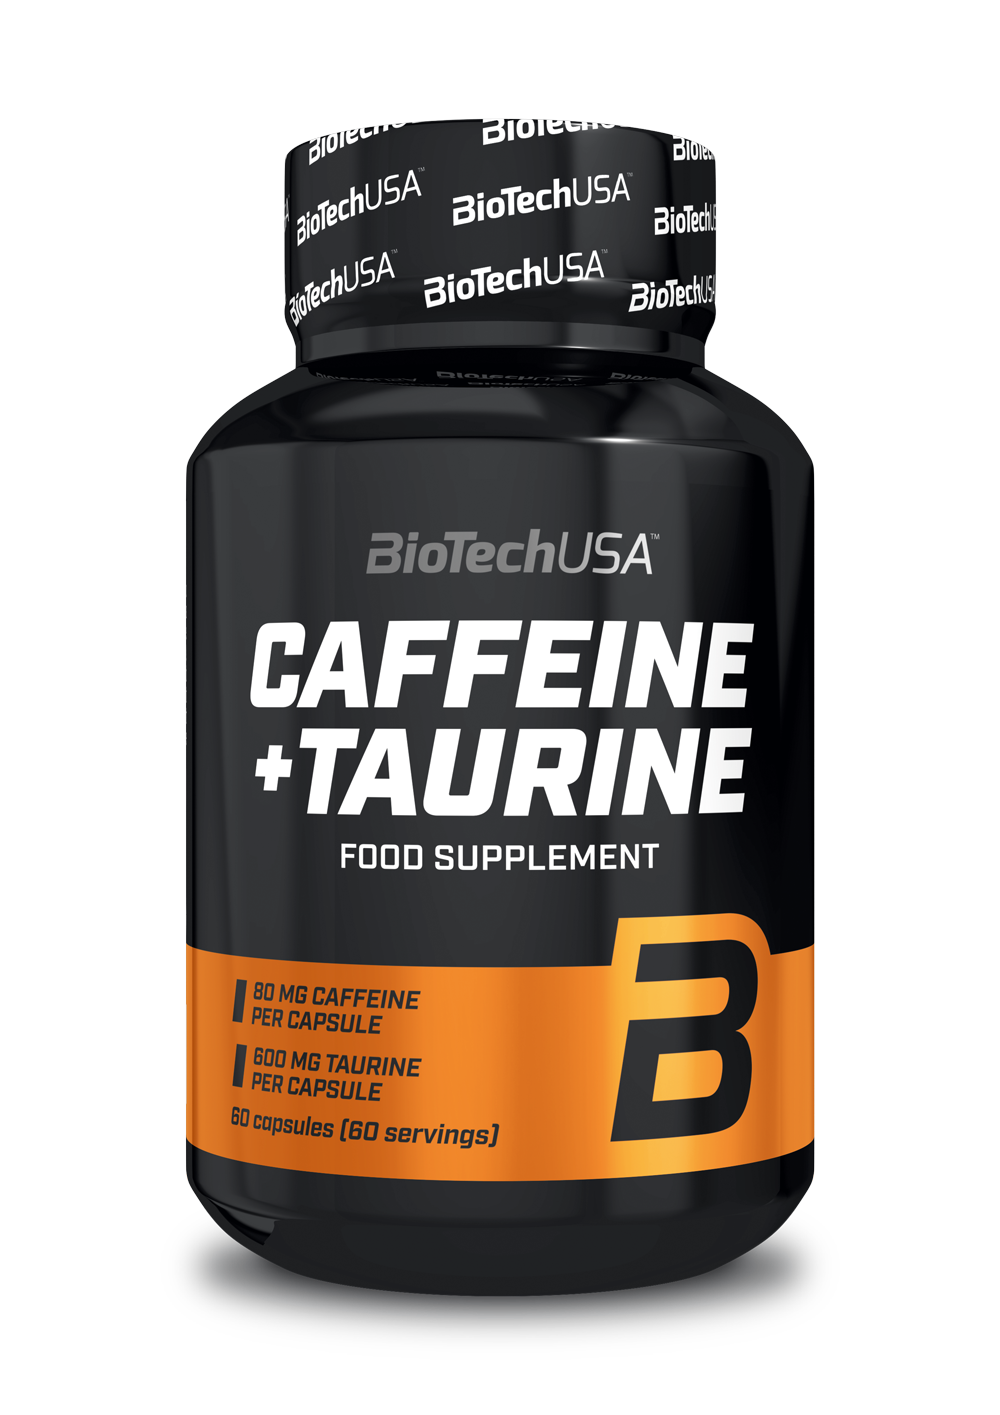 Caffeine + Taurine - 1 x 60 caps